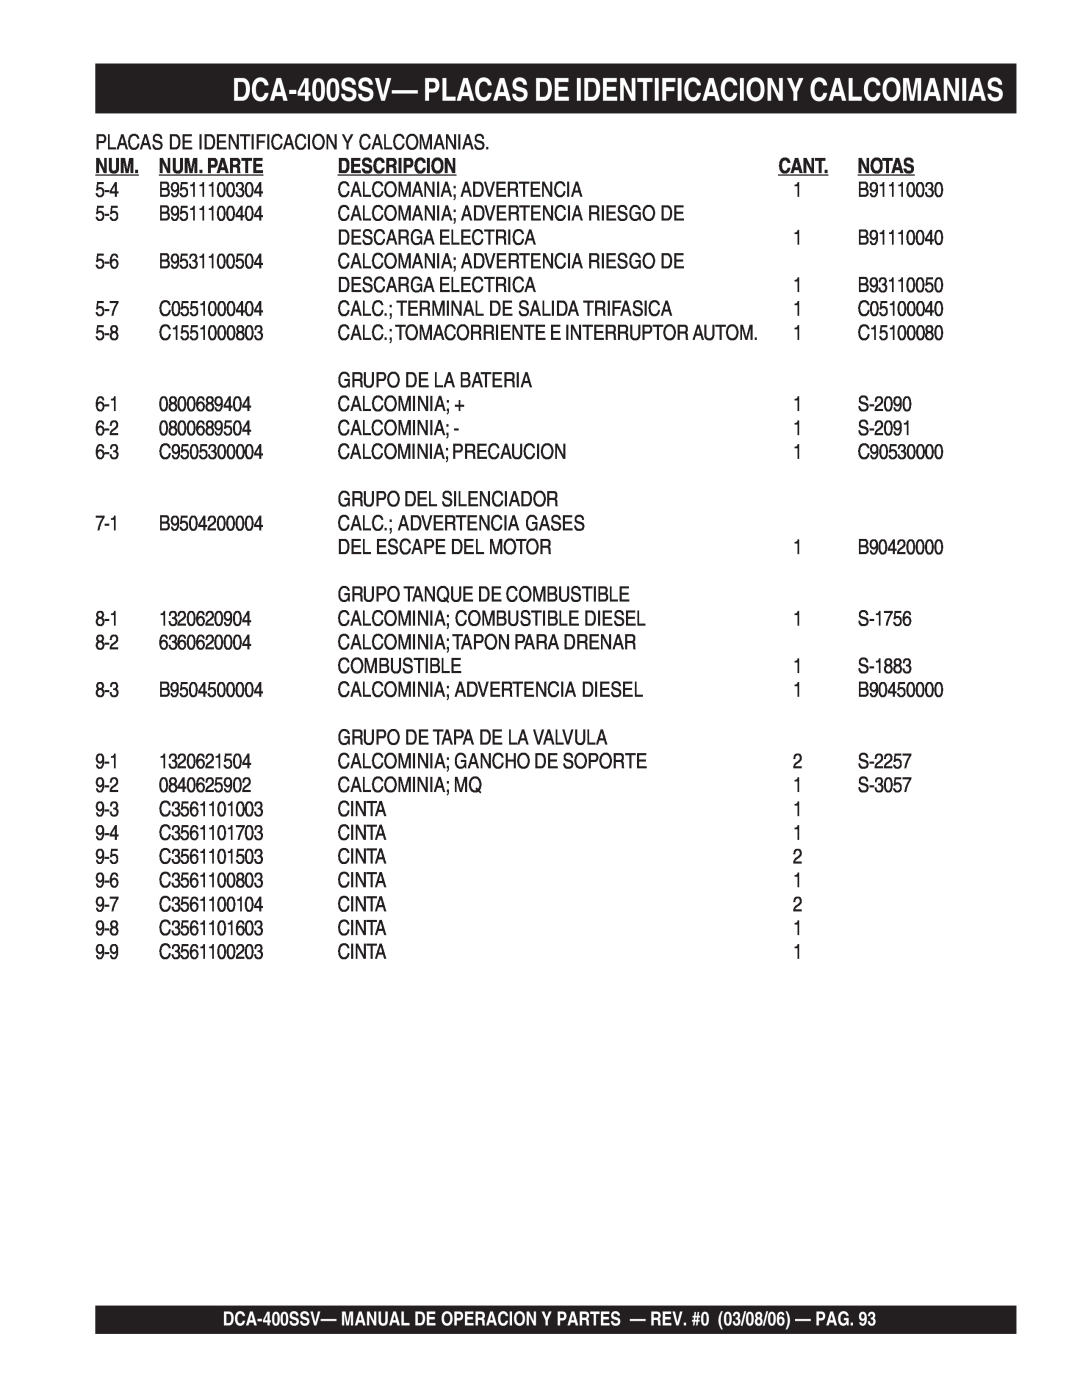 Multiquip DCA-400SSV—PLACAS DE IDENTIFICACIONY CALCOMANIAS, Placas De Identificacion Y Calcomanias, Num. Parte, Notas 